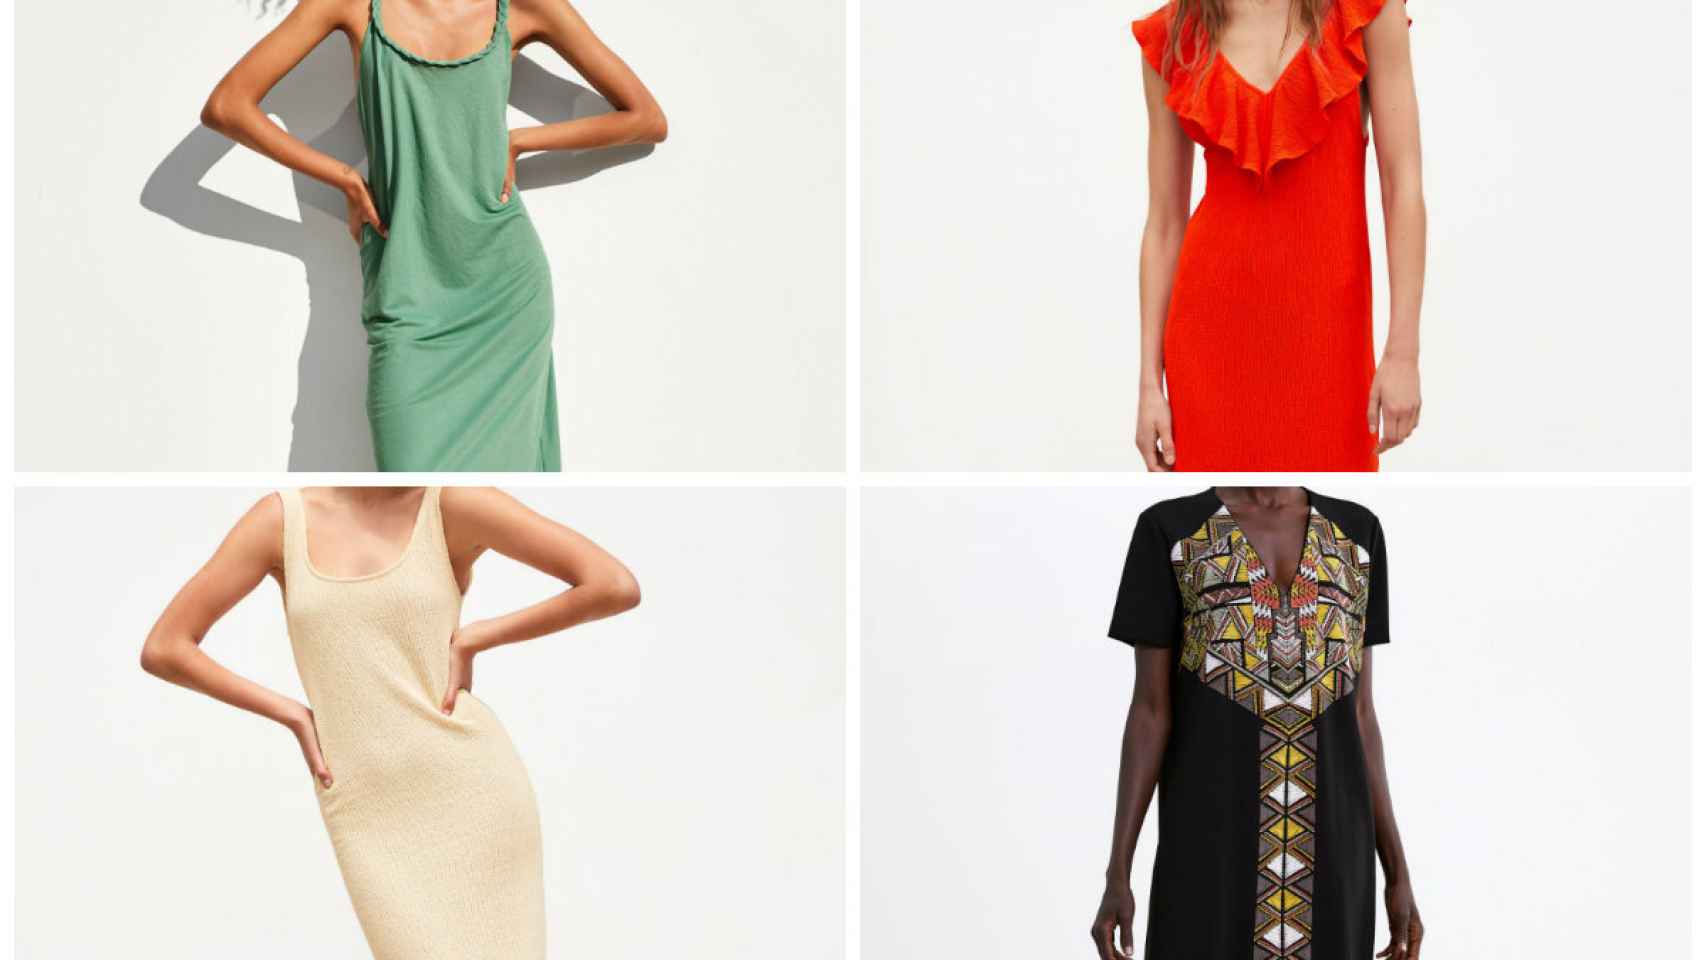 Los 7 vestidos veraniegos por menos de diez euros que querrás en tu armario